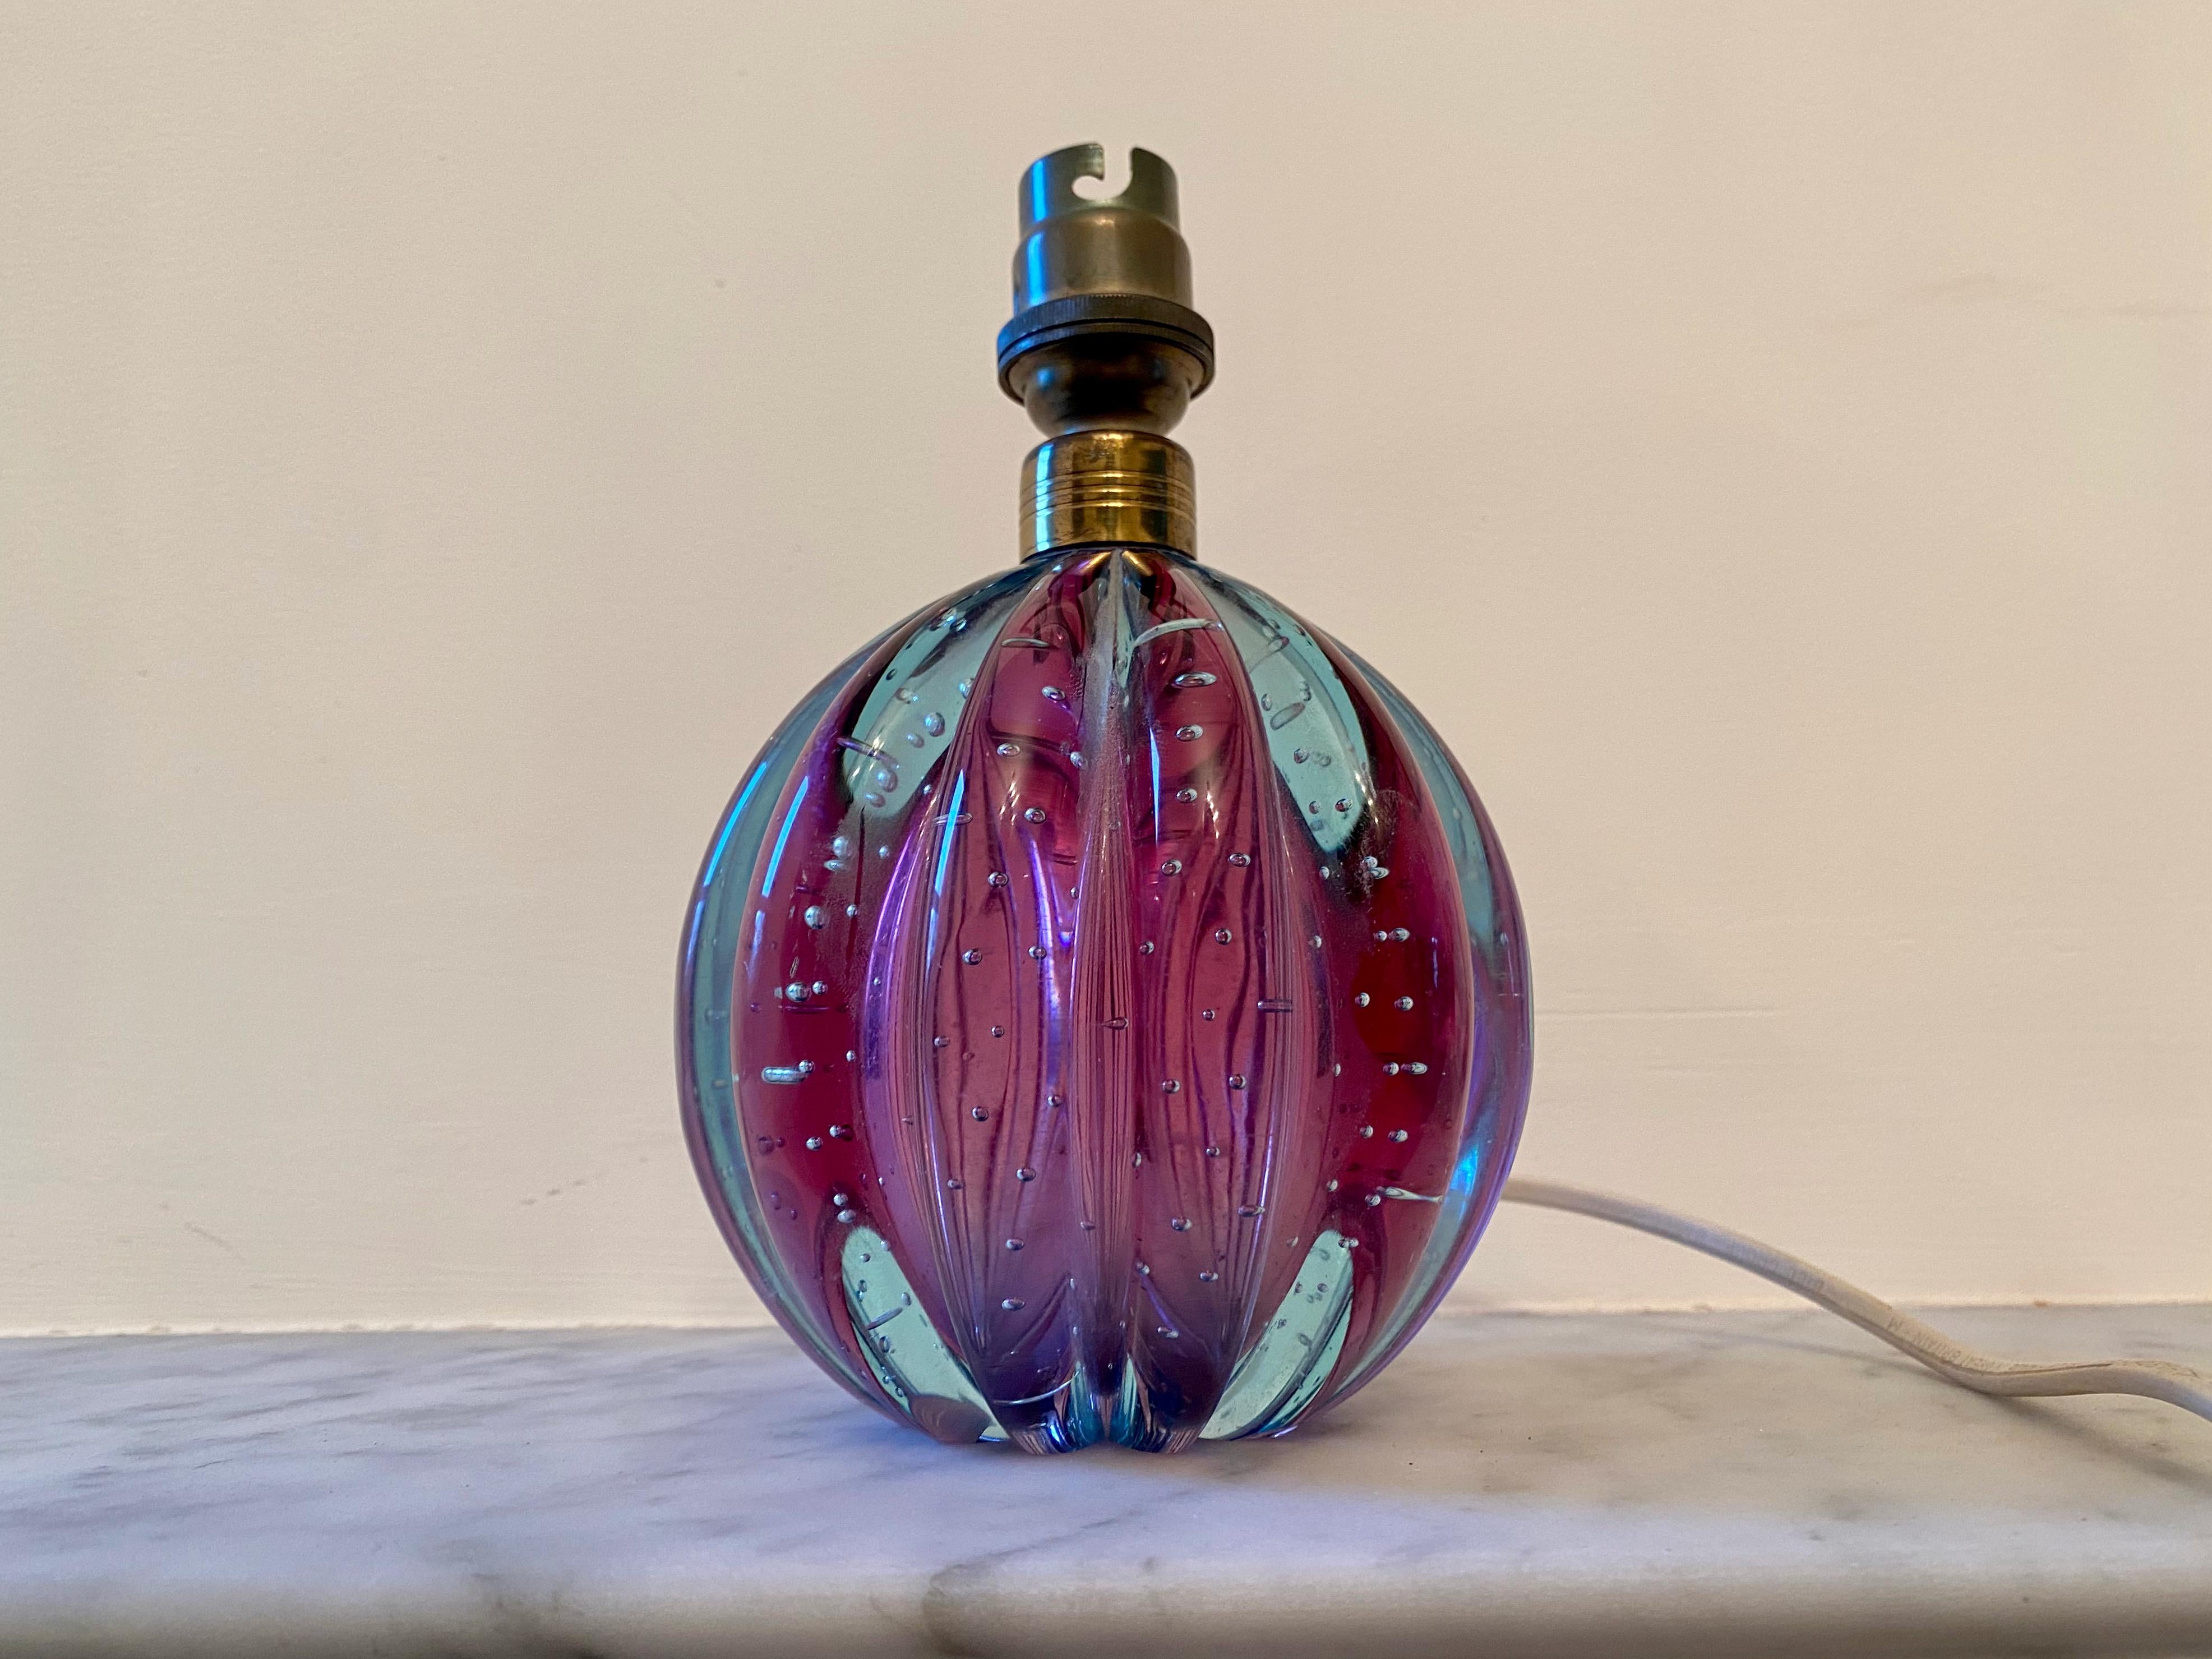 Murano glass lamp

Bullicante

By Seguso

Remnant of scalloped Murano label.

Purple/blue glass.

Italy 1950s/1960s.